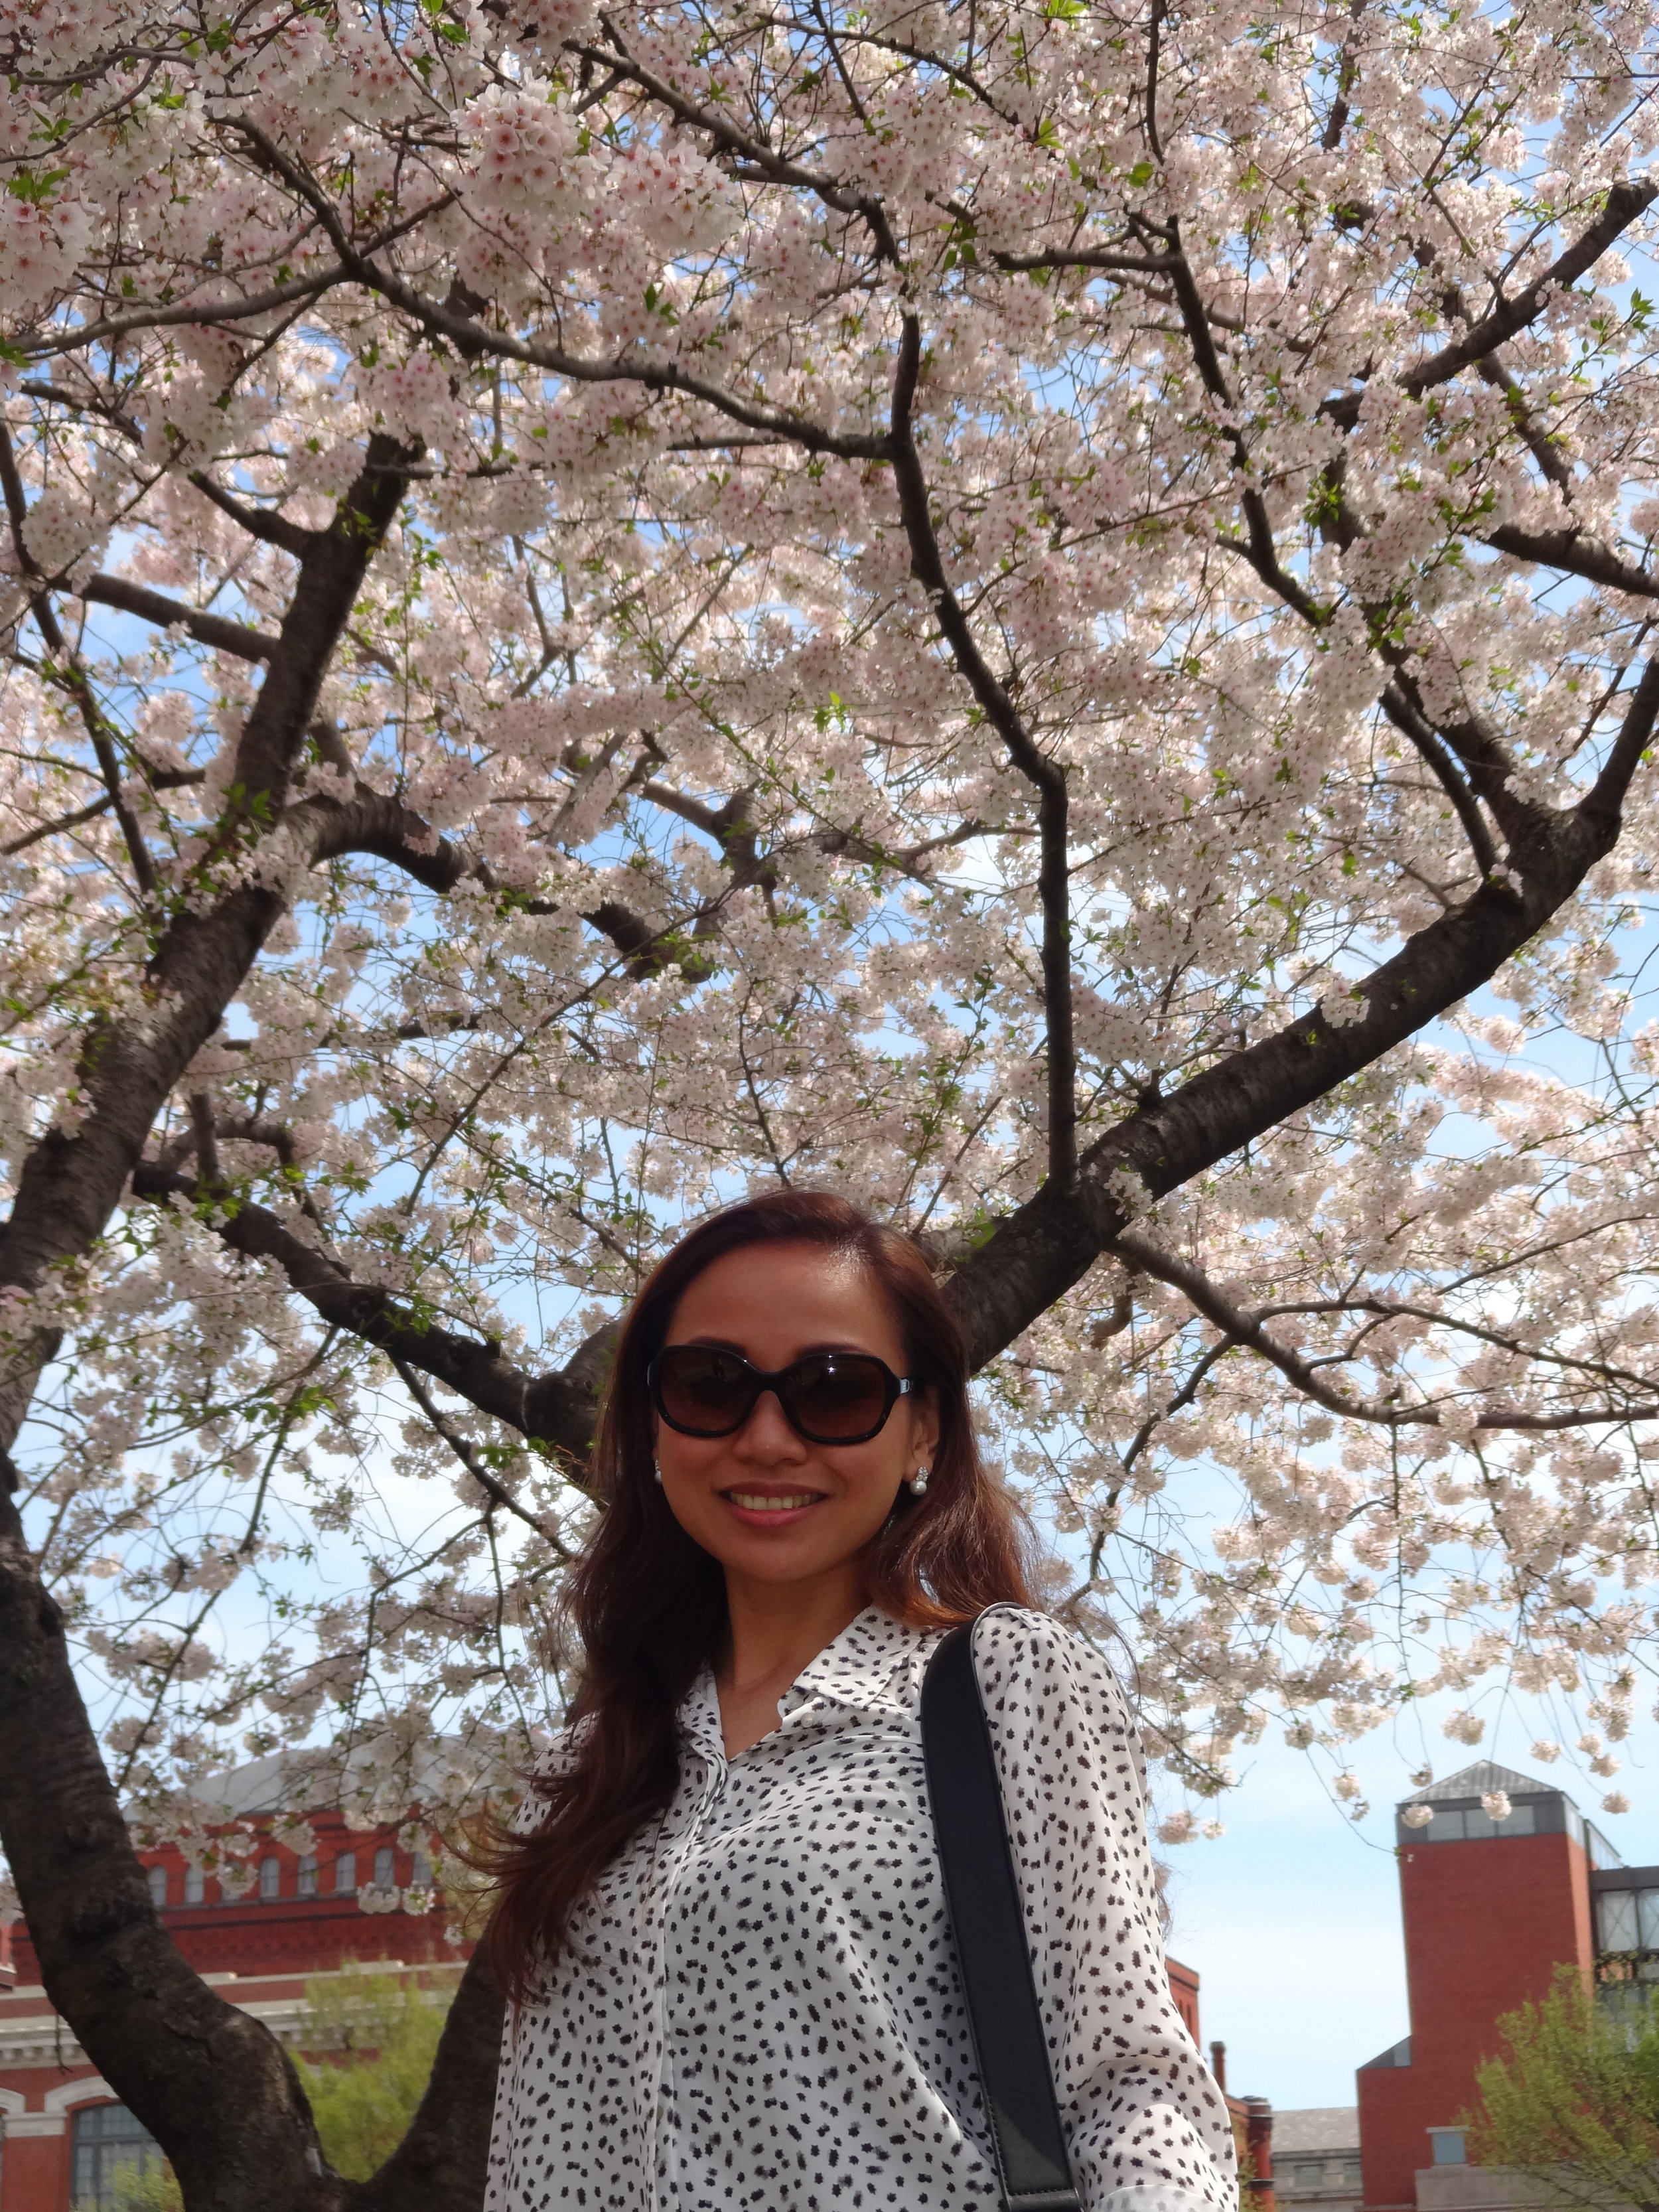 Underneath the sakura trees